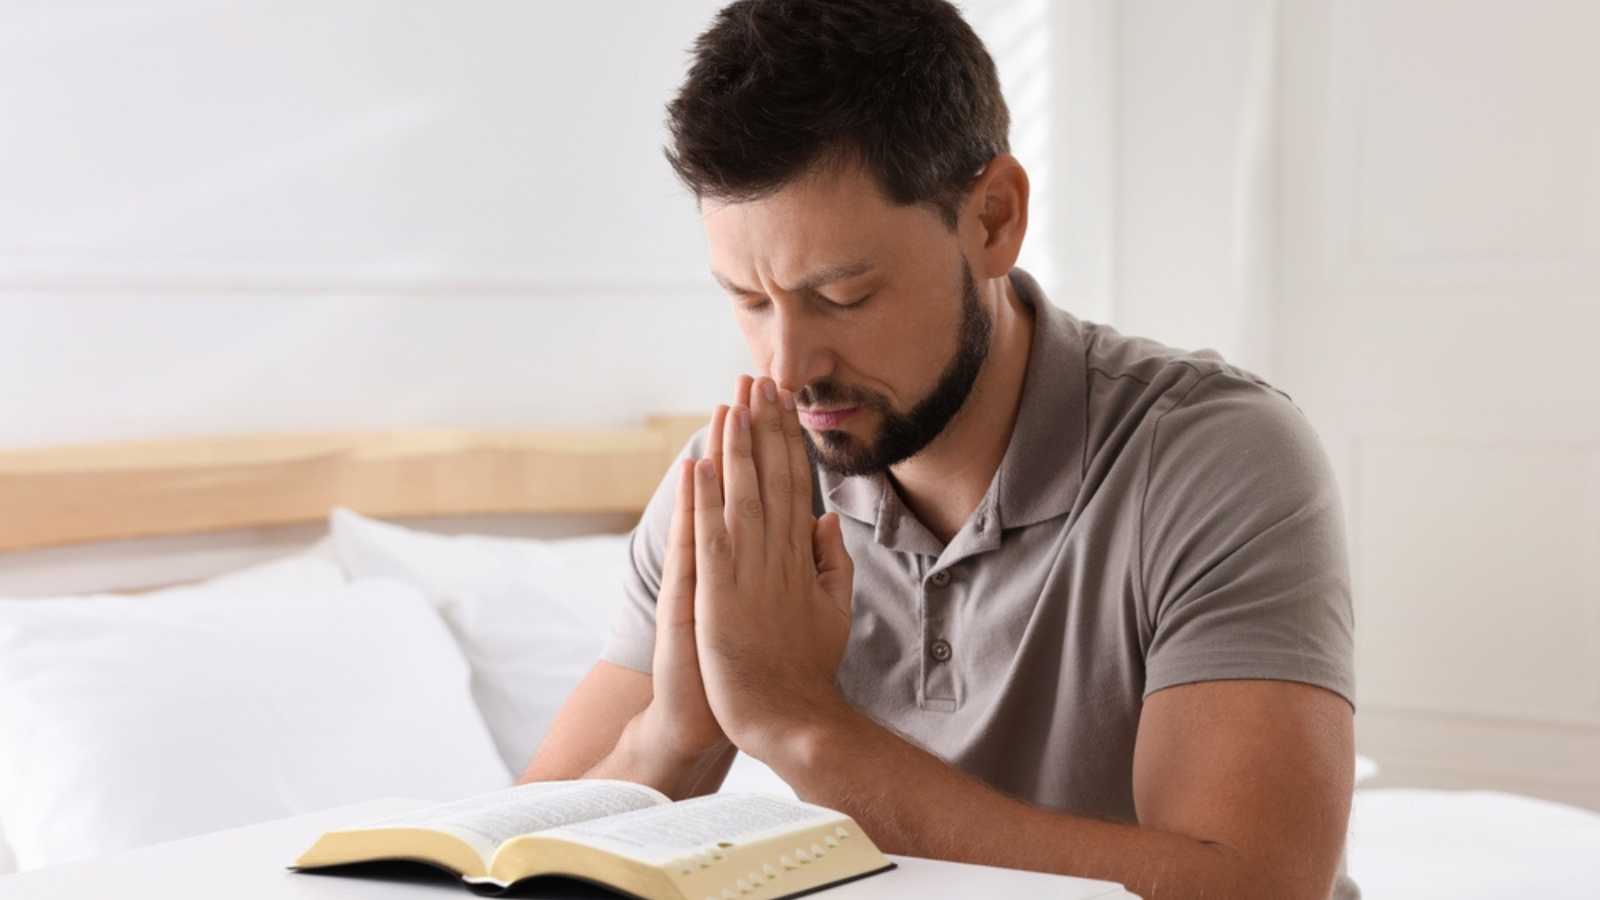 Religious man praying